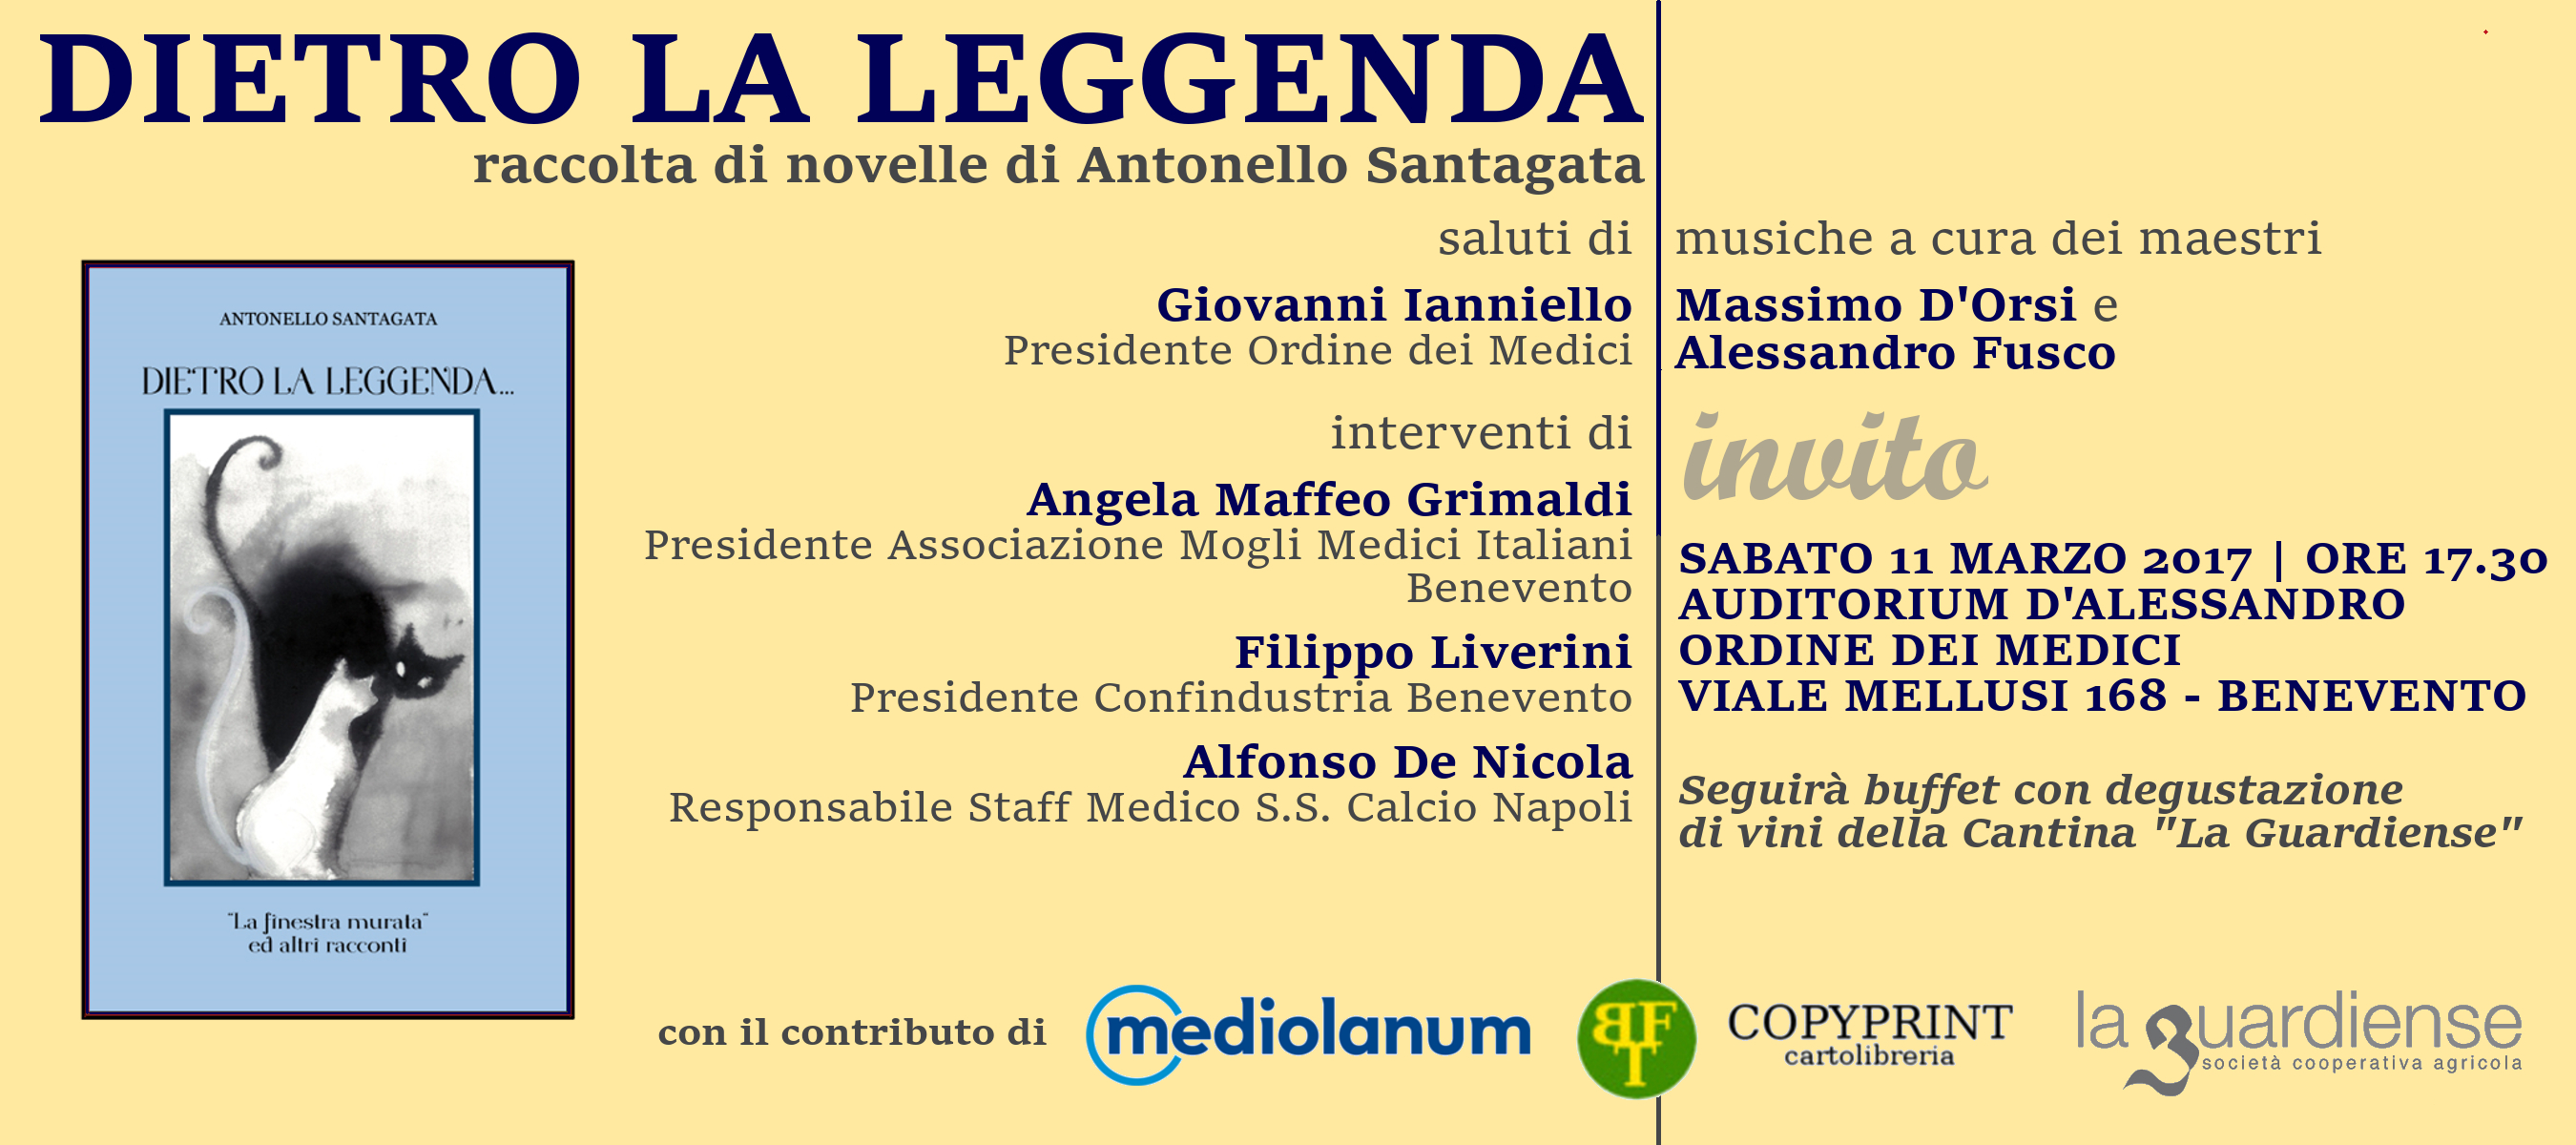 Benevento| All’Ordine dei Medici si presenta il libro “Dietro la leggenda”